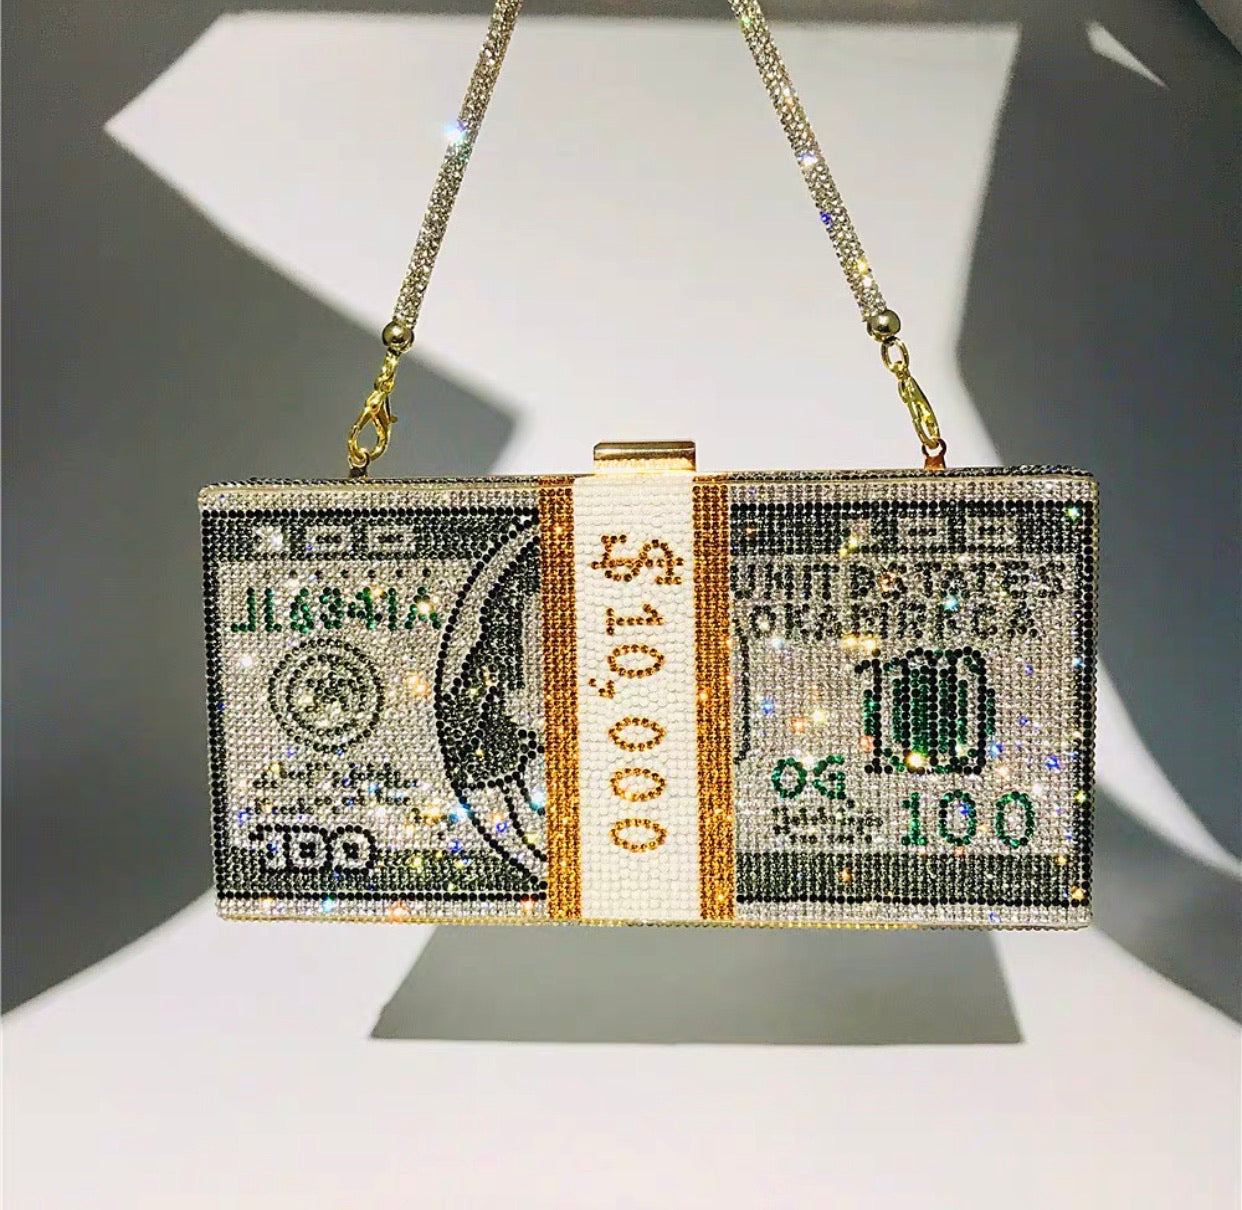 Bella Shiny Dollar bag